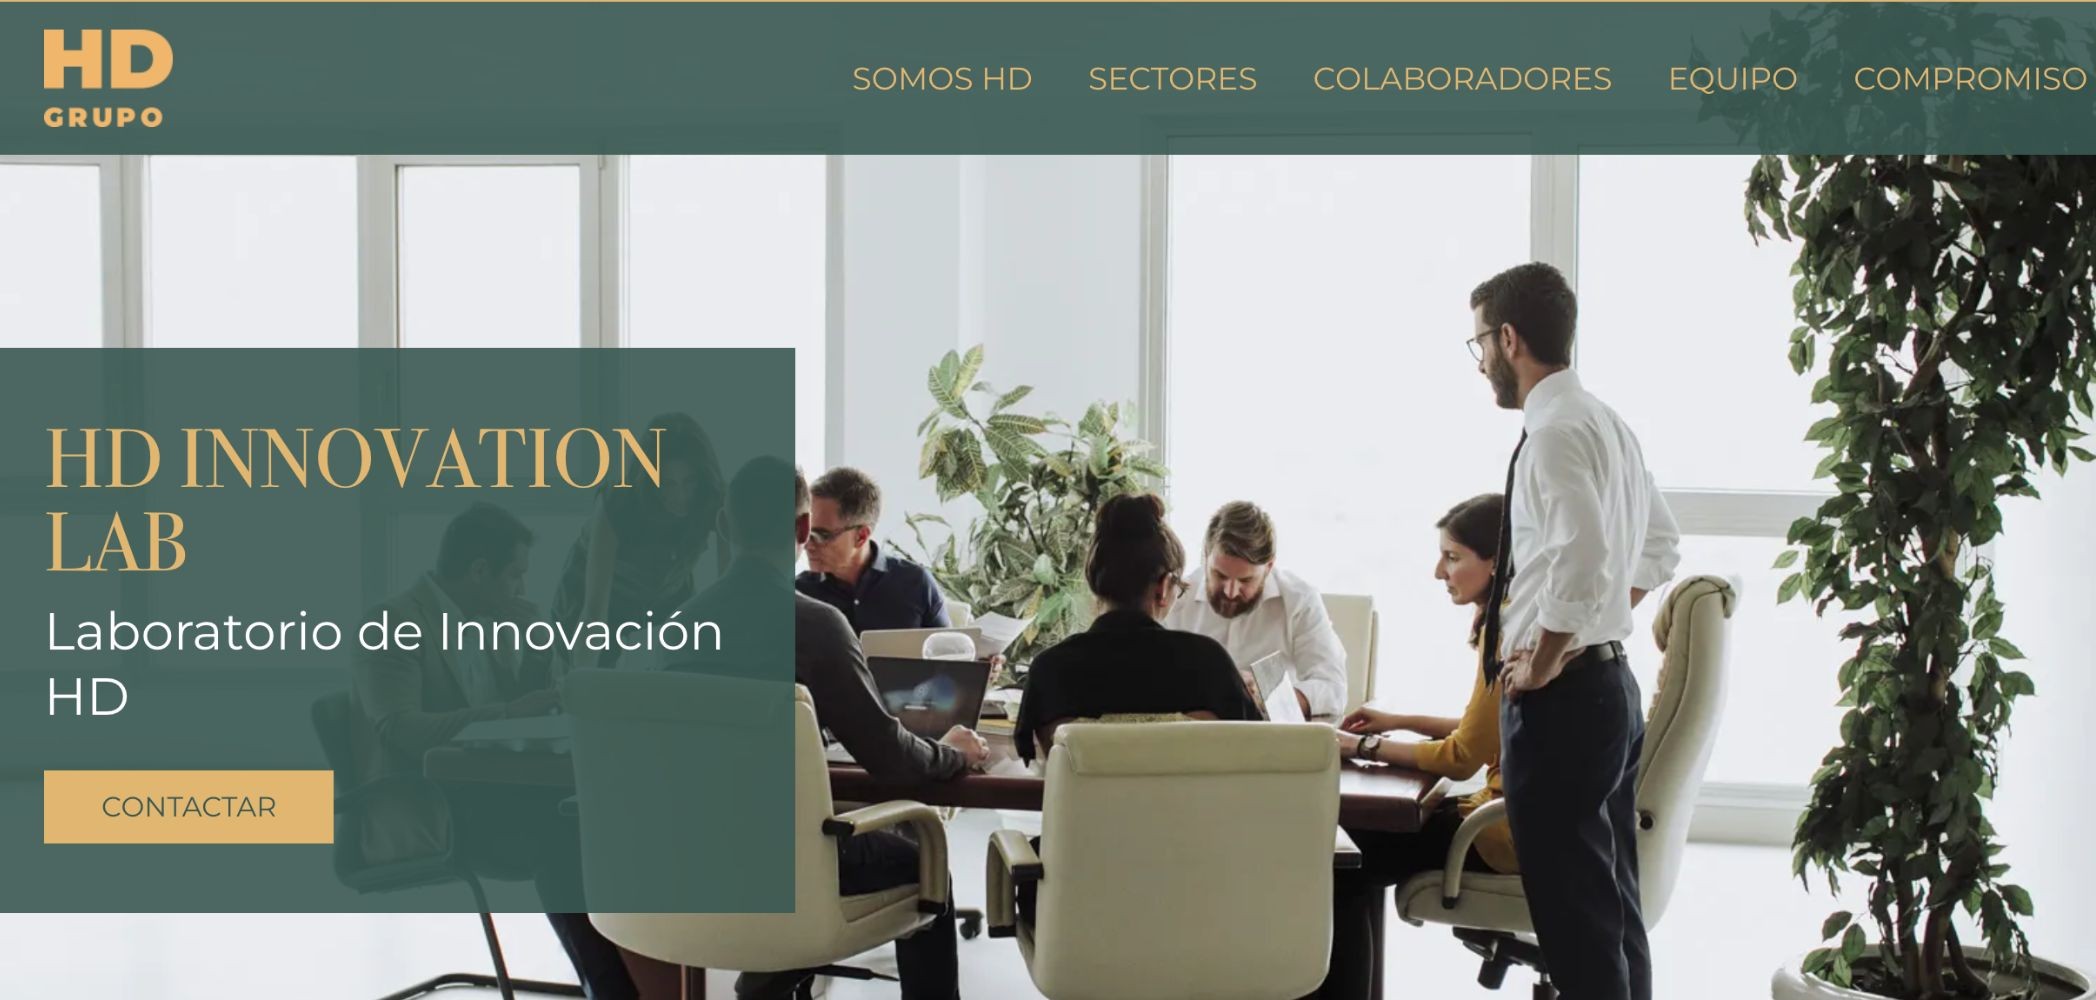 Más de 60 proyectos aspiran a la financiación de Innovation Lab del Grupo HD